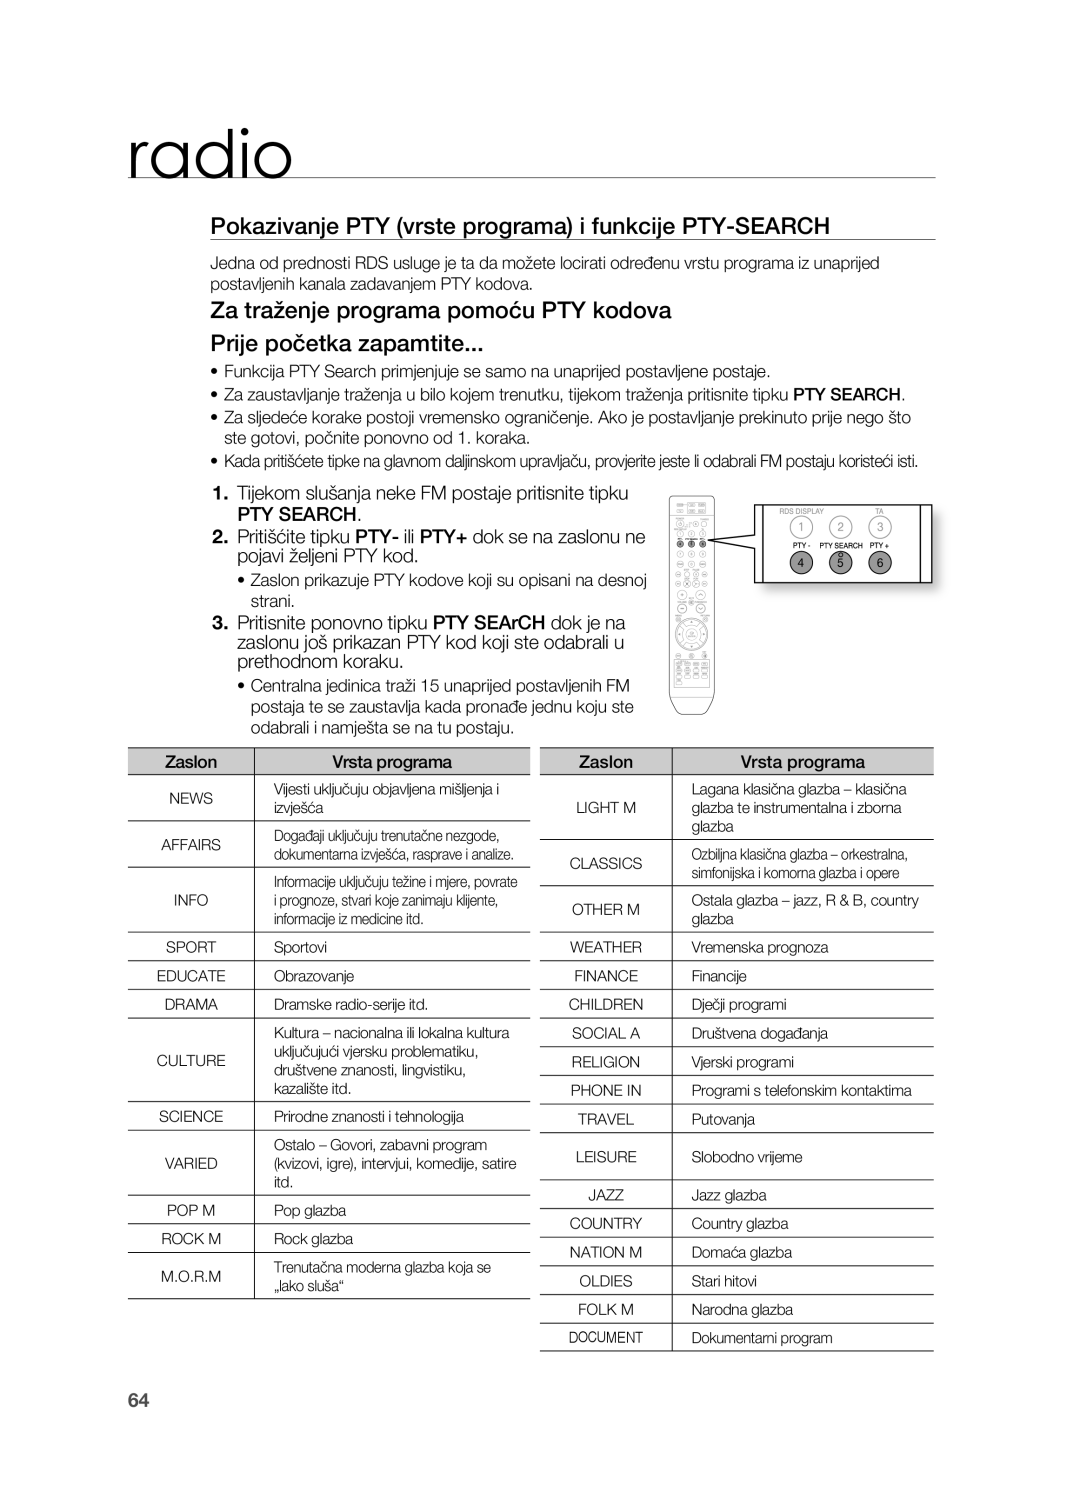 Samsung HT-TZ212R/EDC, HT-Z310R/EDC, HT-Z210R/EDC, HT-TZ315R/EDC Pokazivanje PTY vrste programa i funkcije PTY-SEARCH, radio 